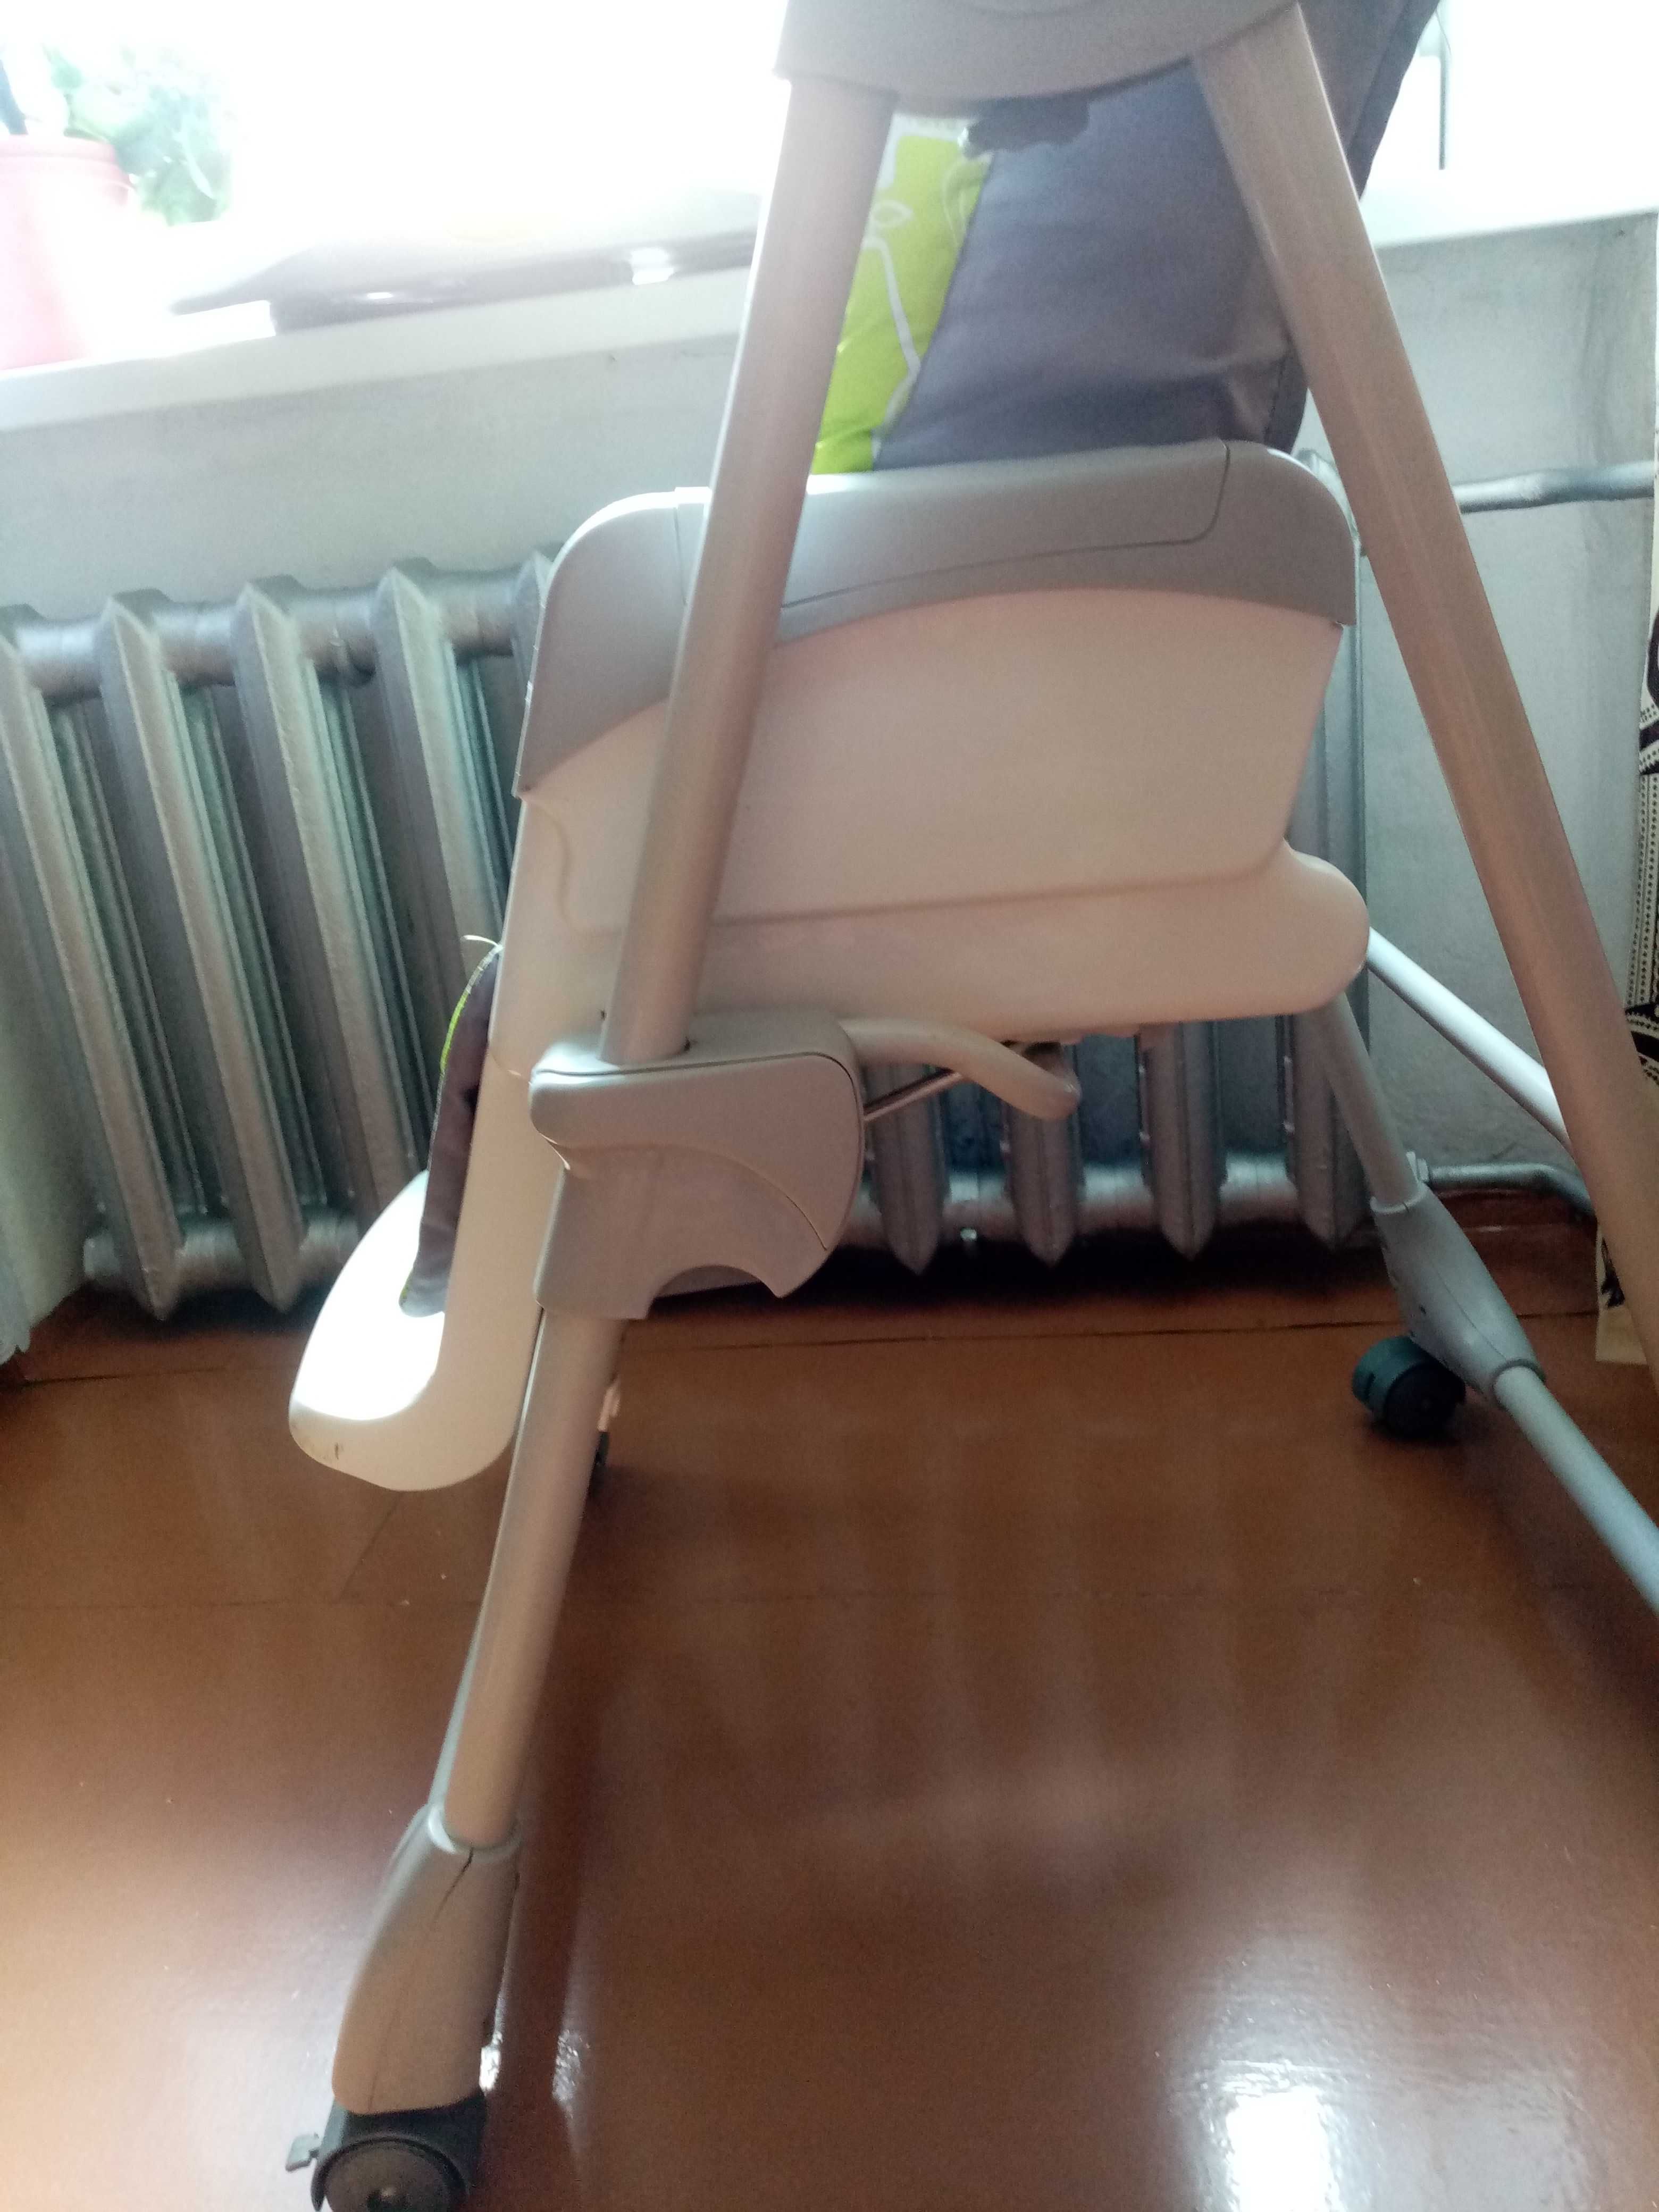 Продам стульчик для кормления ребенка и шезлонг. Два в одном.